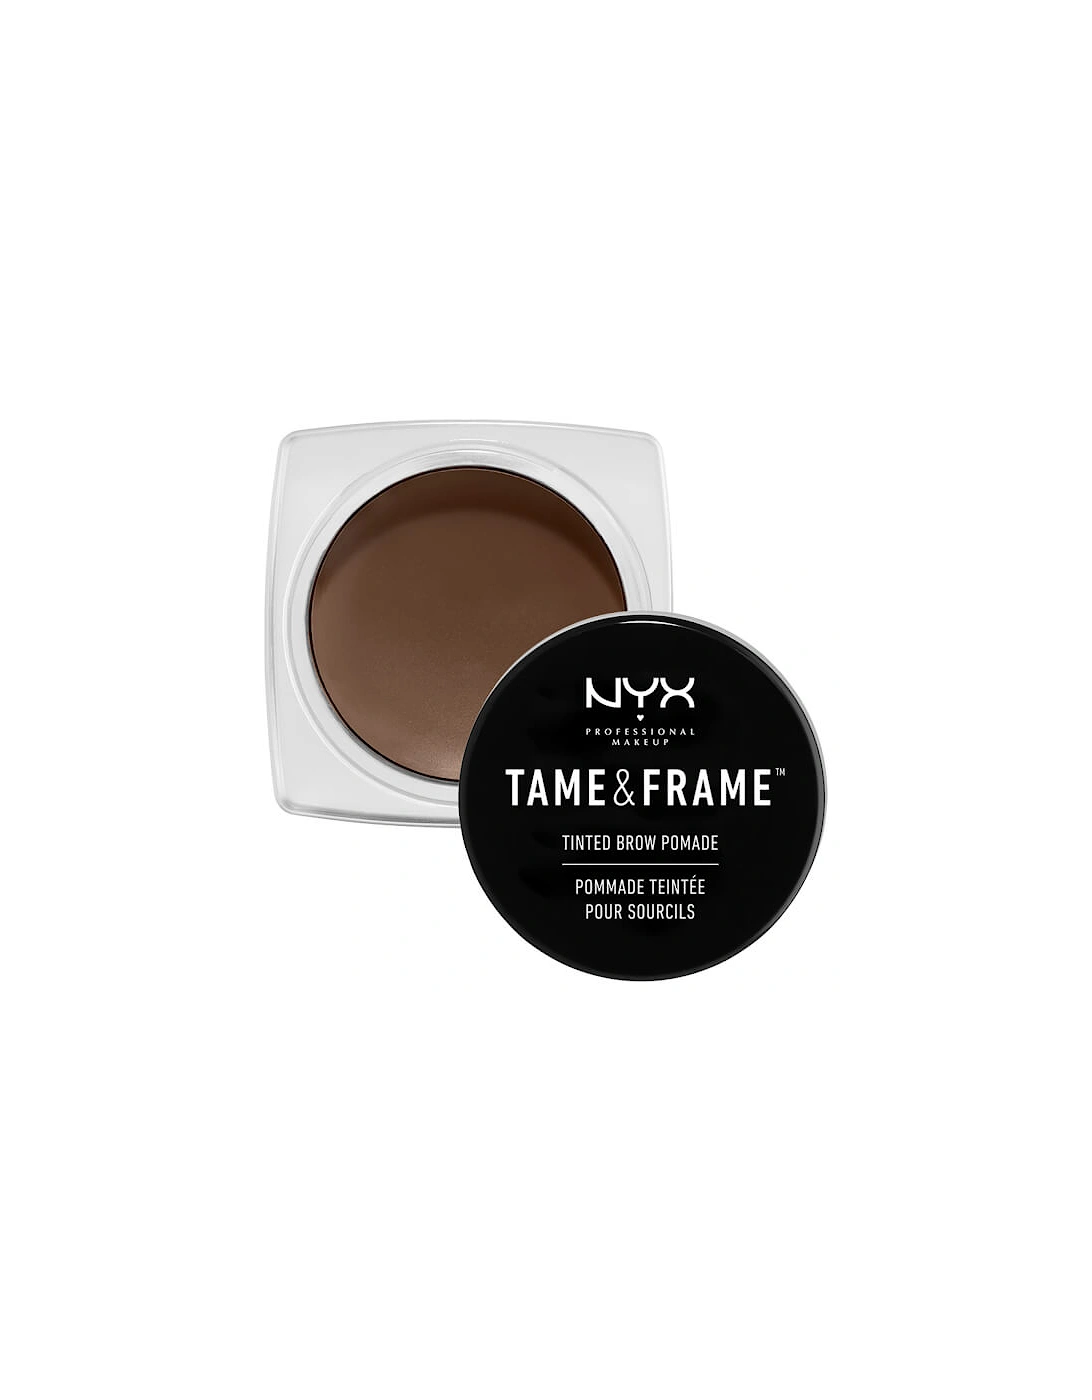 Tame & Frame Tinted Brow Pomade - Chocolate, 2 of 1